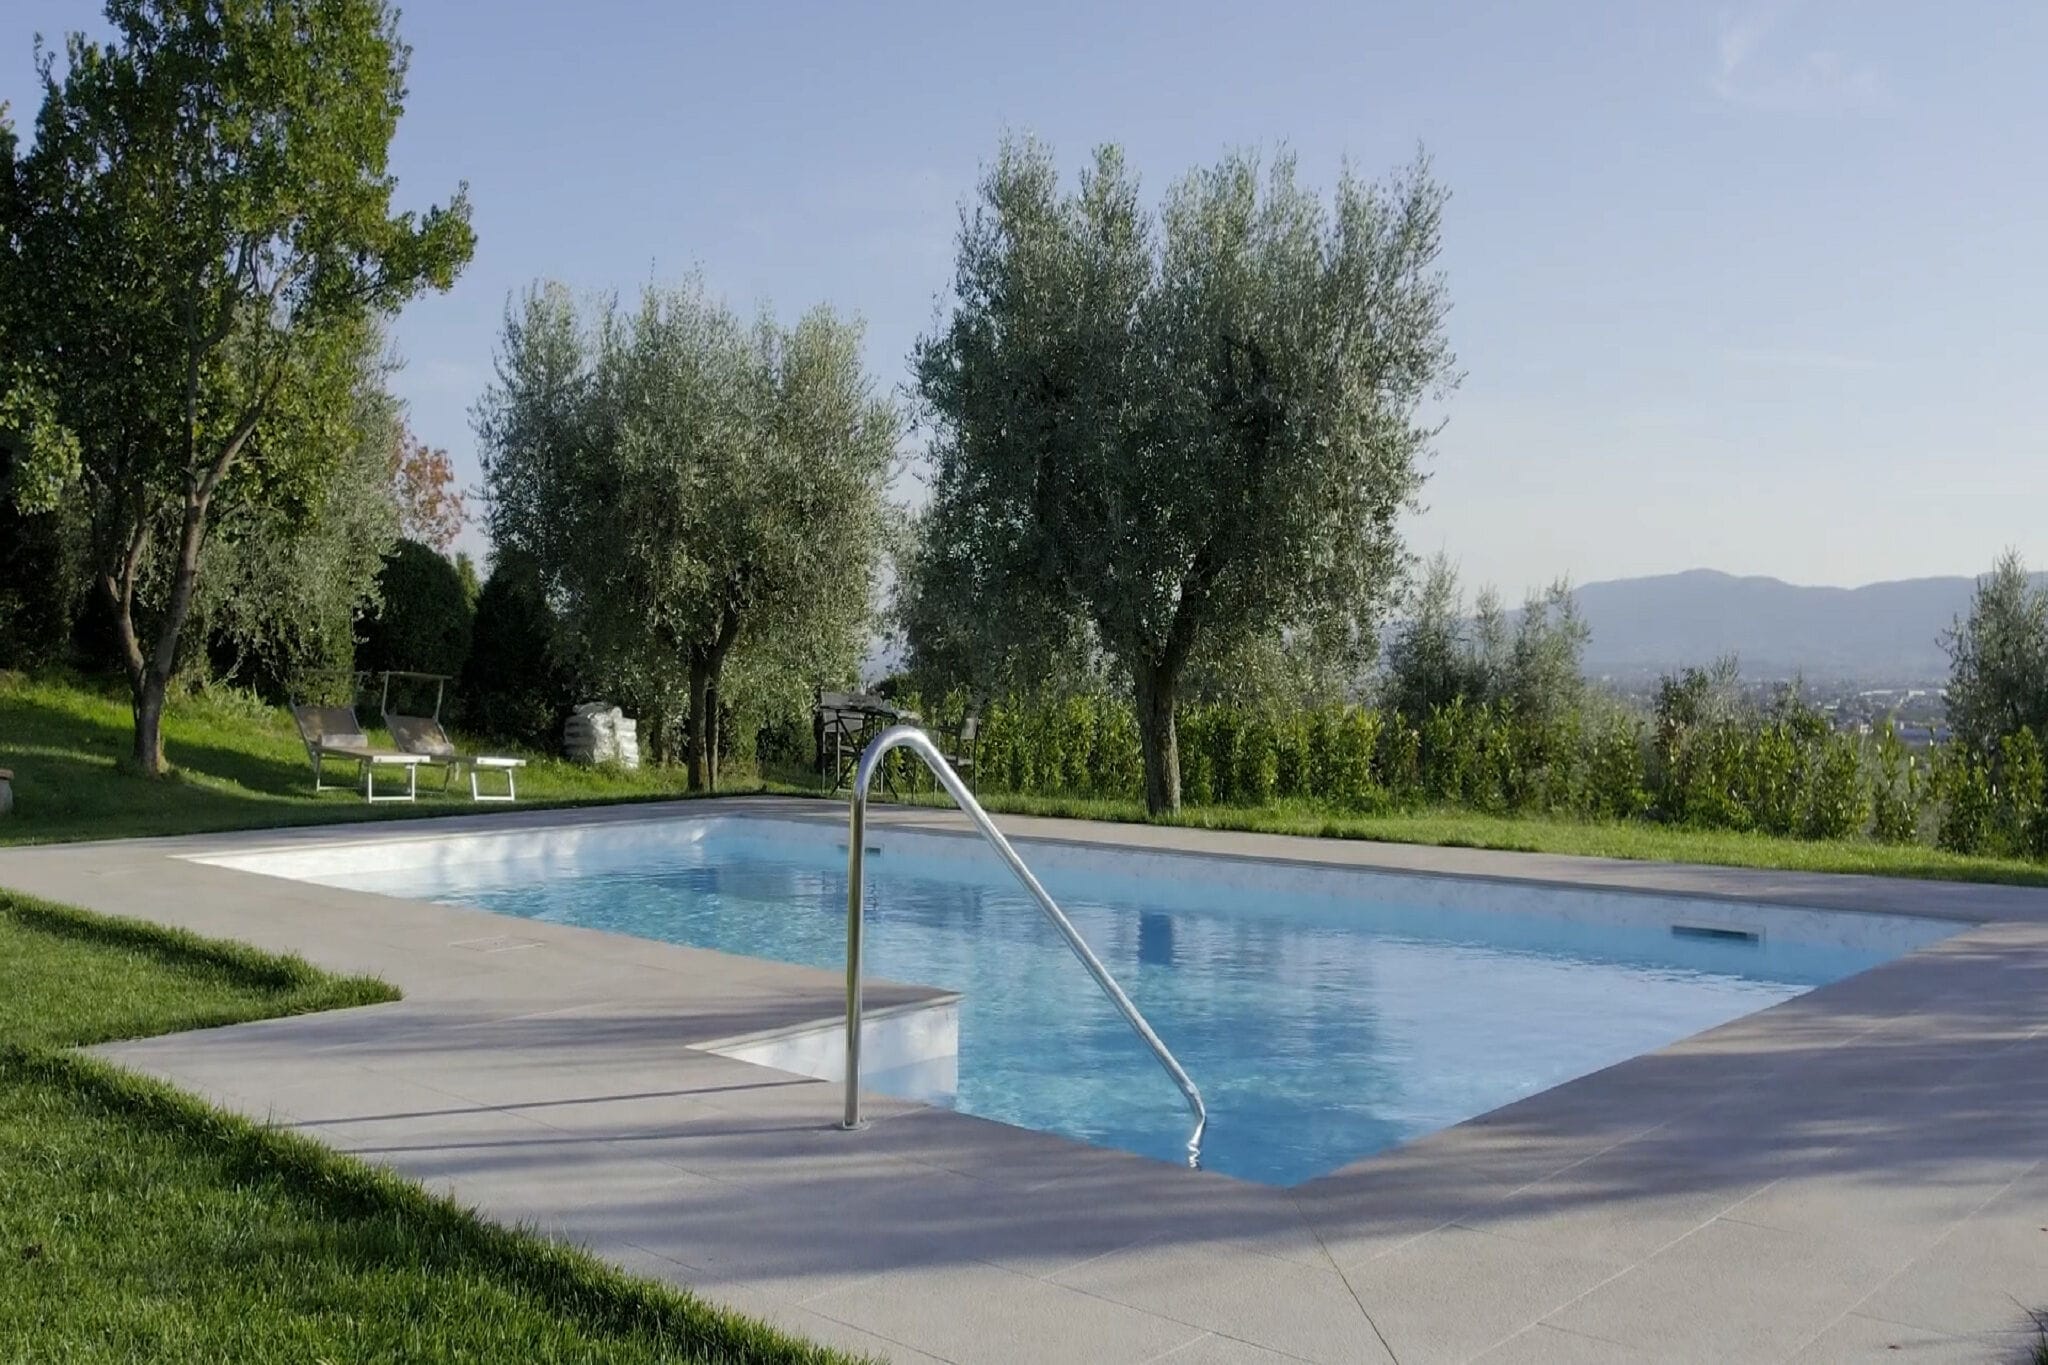 Maison de vacances confortable avec piscine située à Pistoia